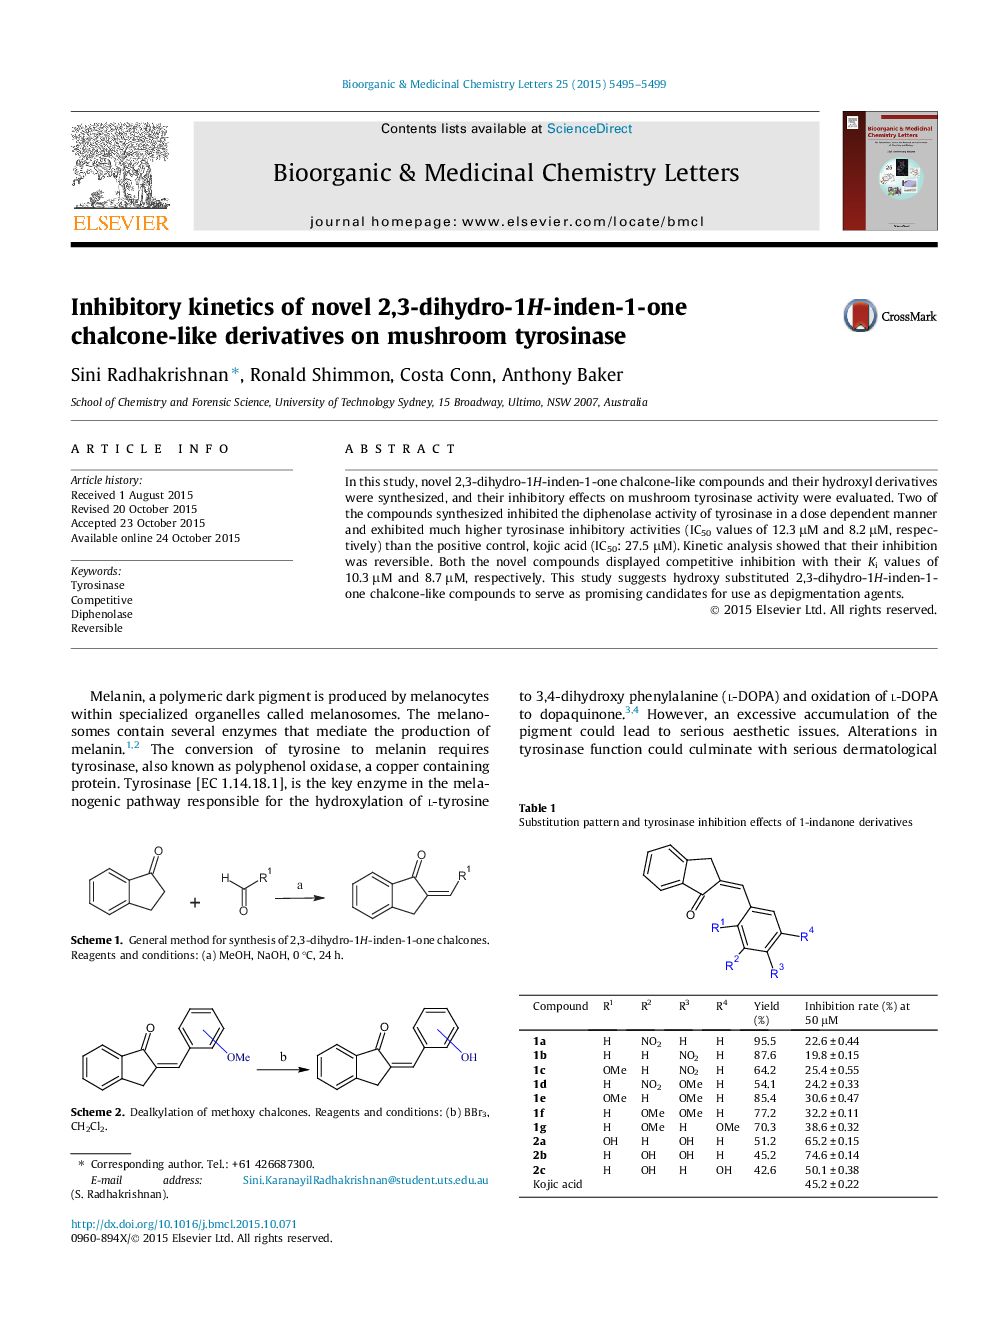 سینتیک بازدارنده مشتقات کلوکین 2،3-دی هیدرو-1 هیدرولایدین 1 در تریروزیناز قارچ 